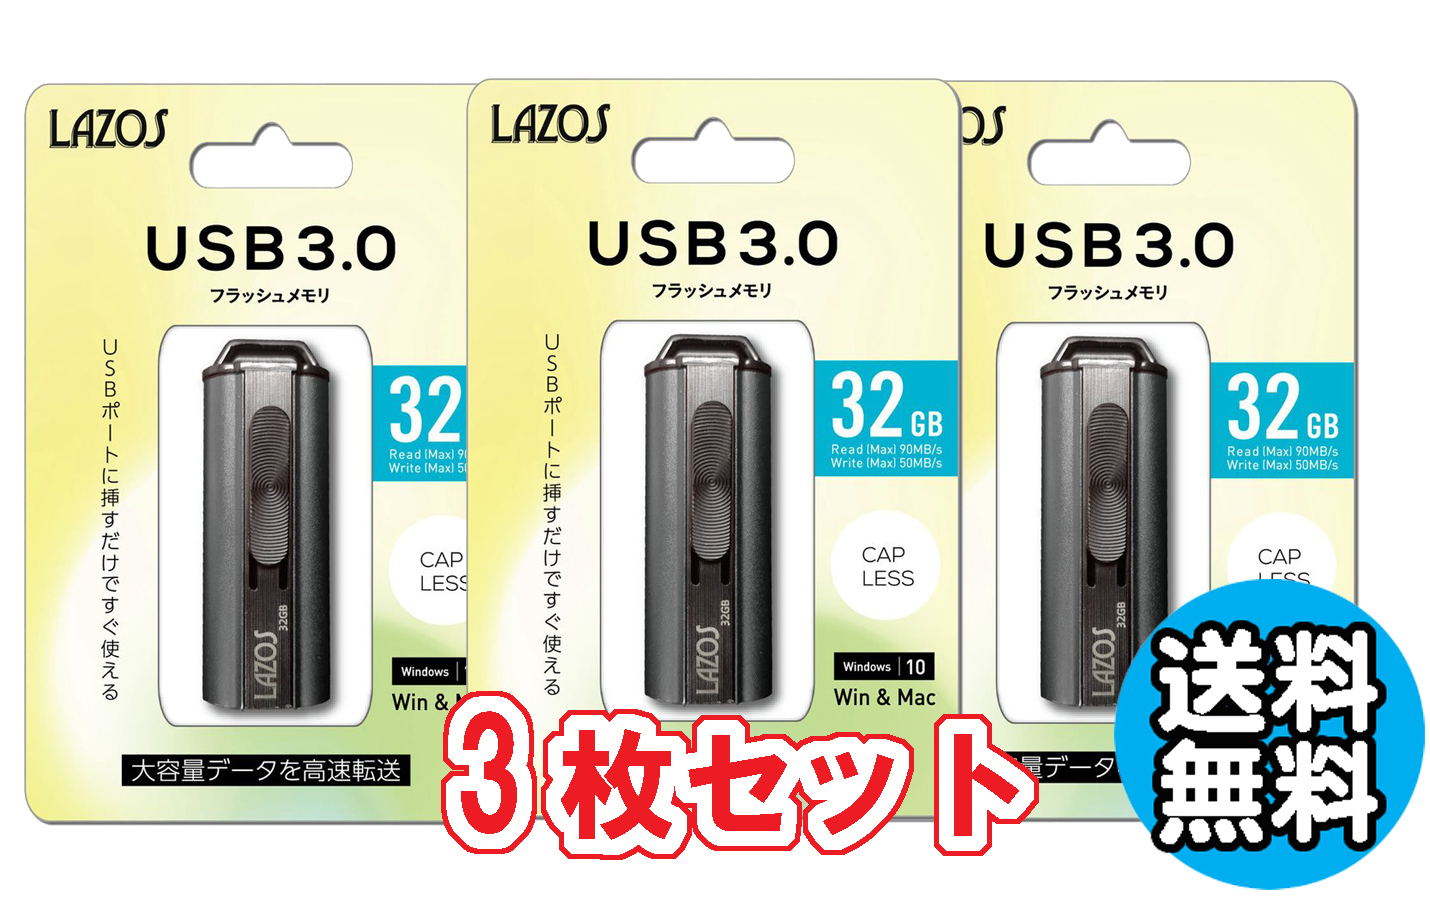 【ついに再販開始！】3個セット 送料無料 USBメモリー 32GB フラッシュメモリー おすすめ ゆうパケット発送 リーダーメディアテクノ ラソス Lazos USBメモリ 32GB USB3.0対応 L-US32-3.0